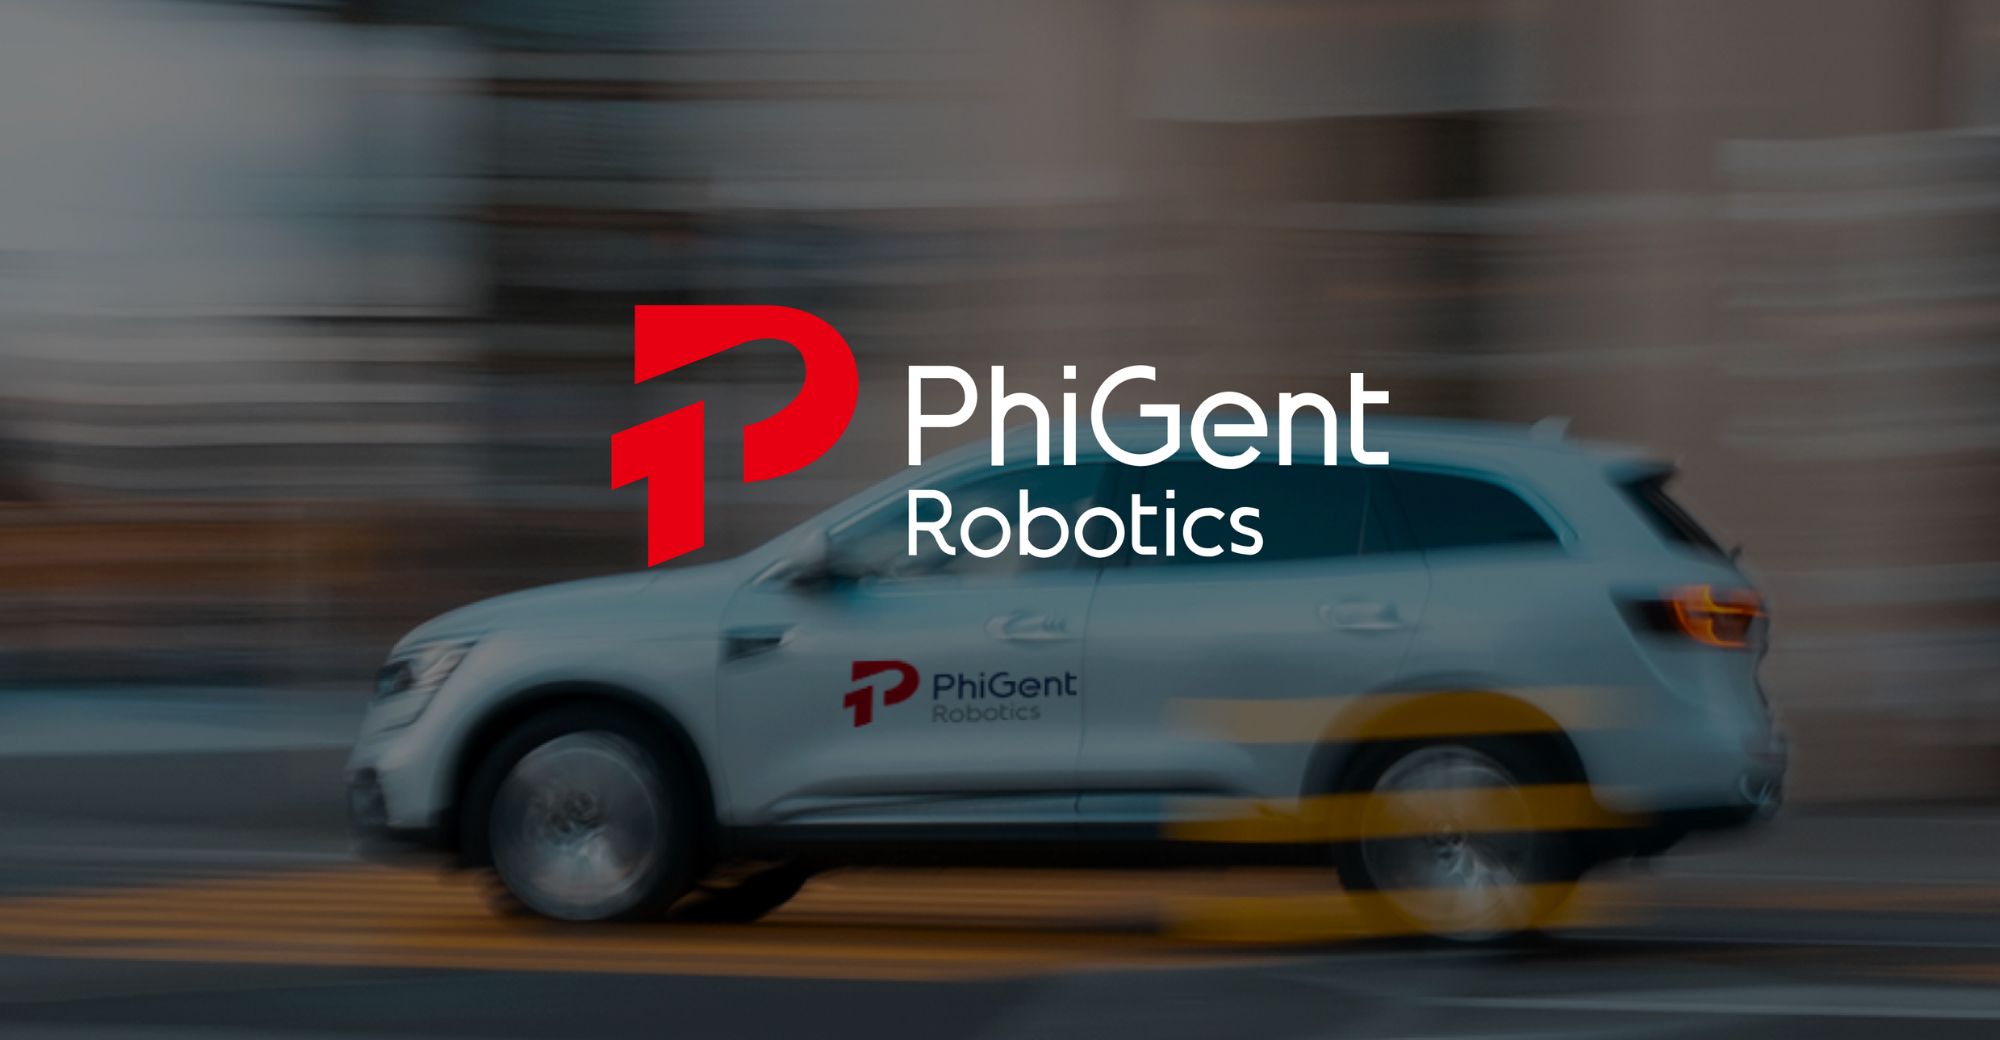 PhiGent Robotics משלימה הסדר שני של סבב מימון